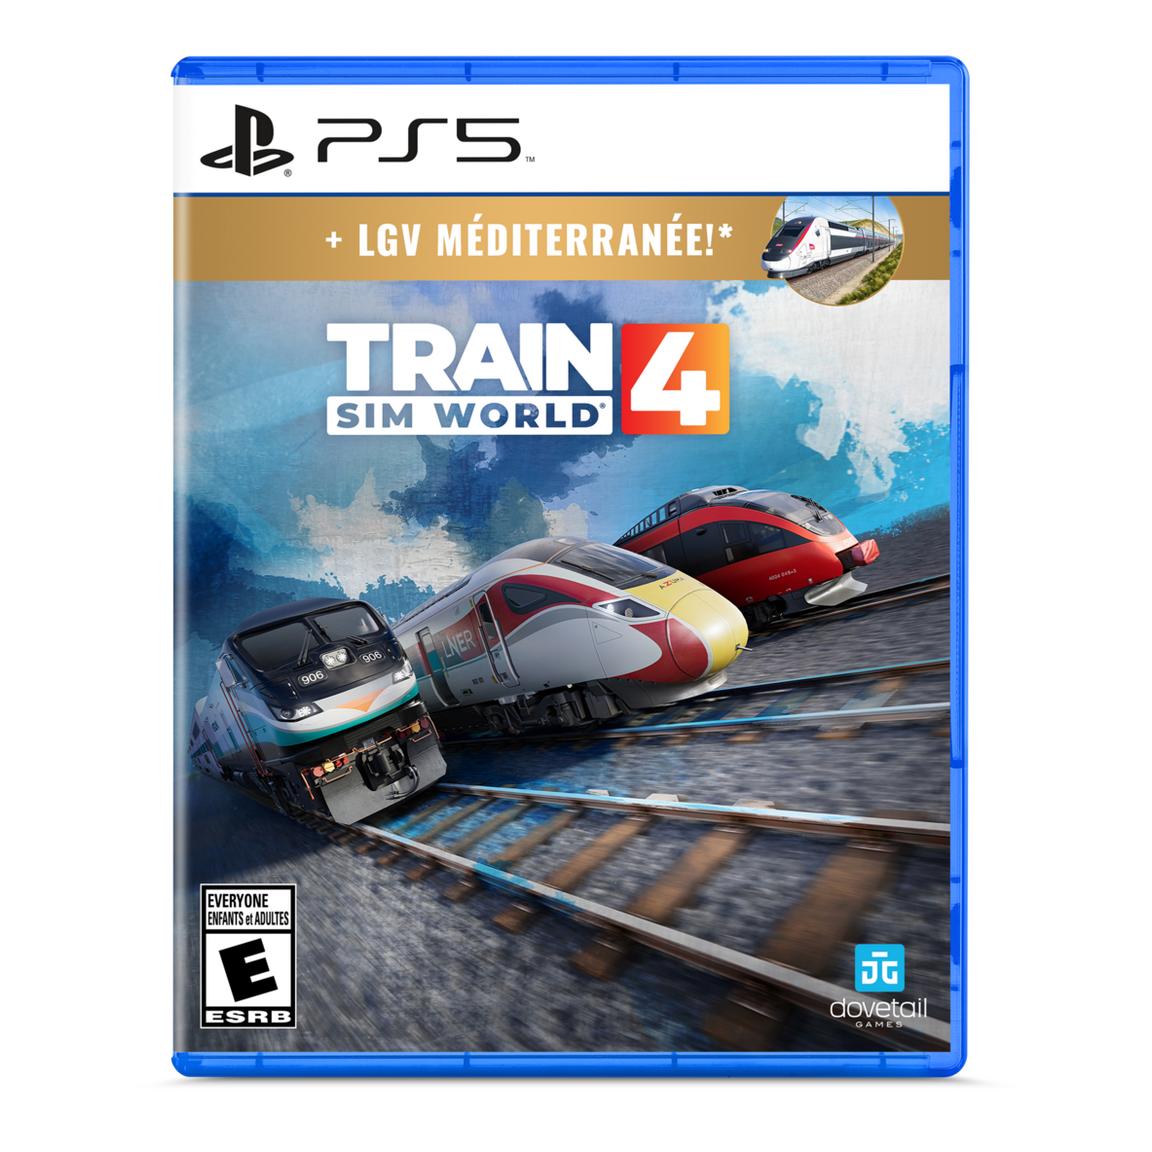 train sim world 2 Видеоигра Train Sim World 4 - PlayStation 5